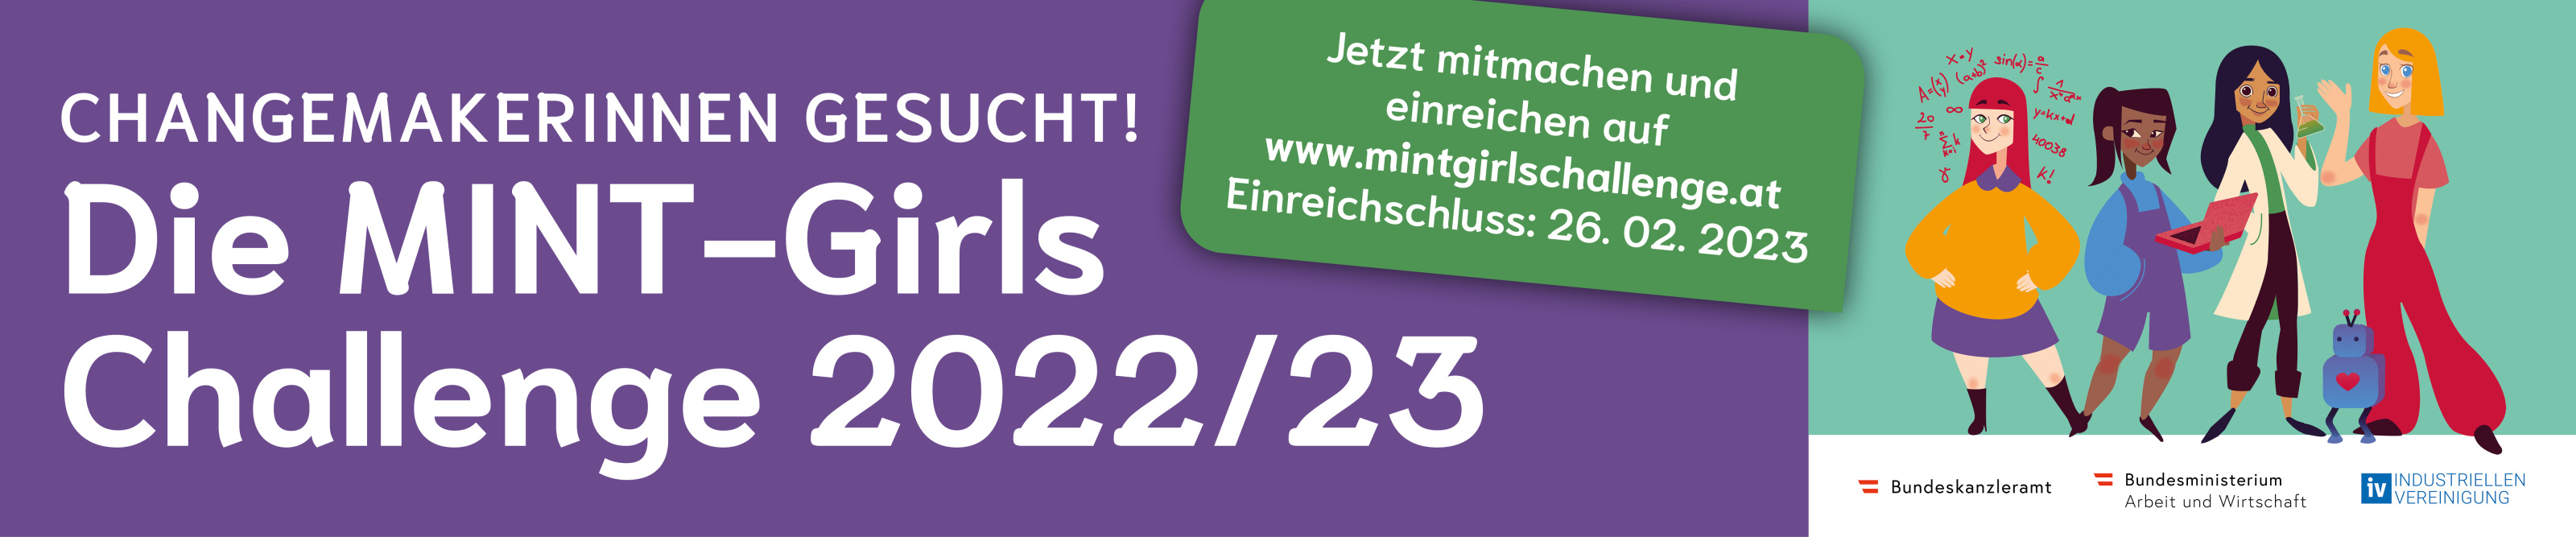 Banner der MINT-Girls Challenge 2022/23 Changemakerinnen gesucht, Einreichungen unter www.mintgirlschallenge.at, Einreichschluss: 26.02.2023 